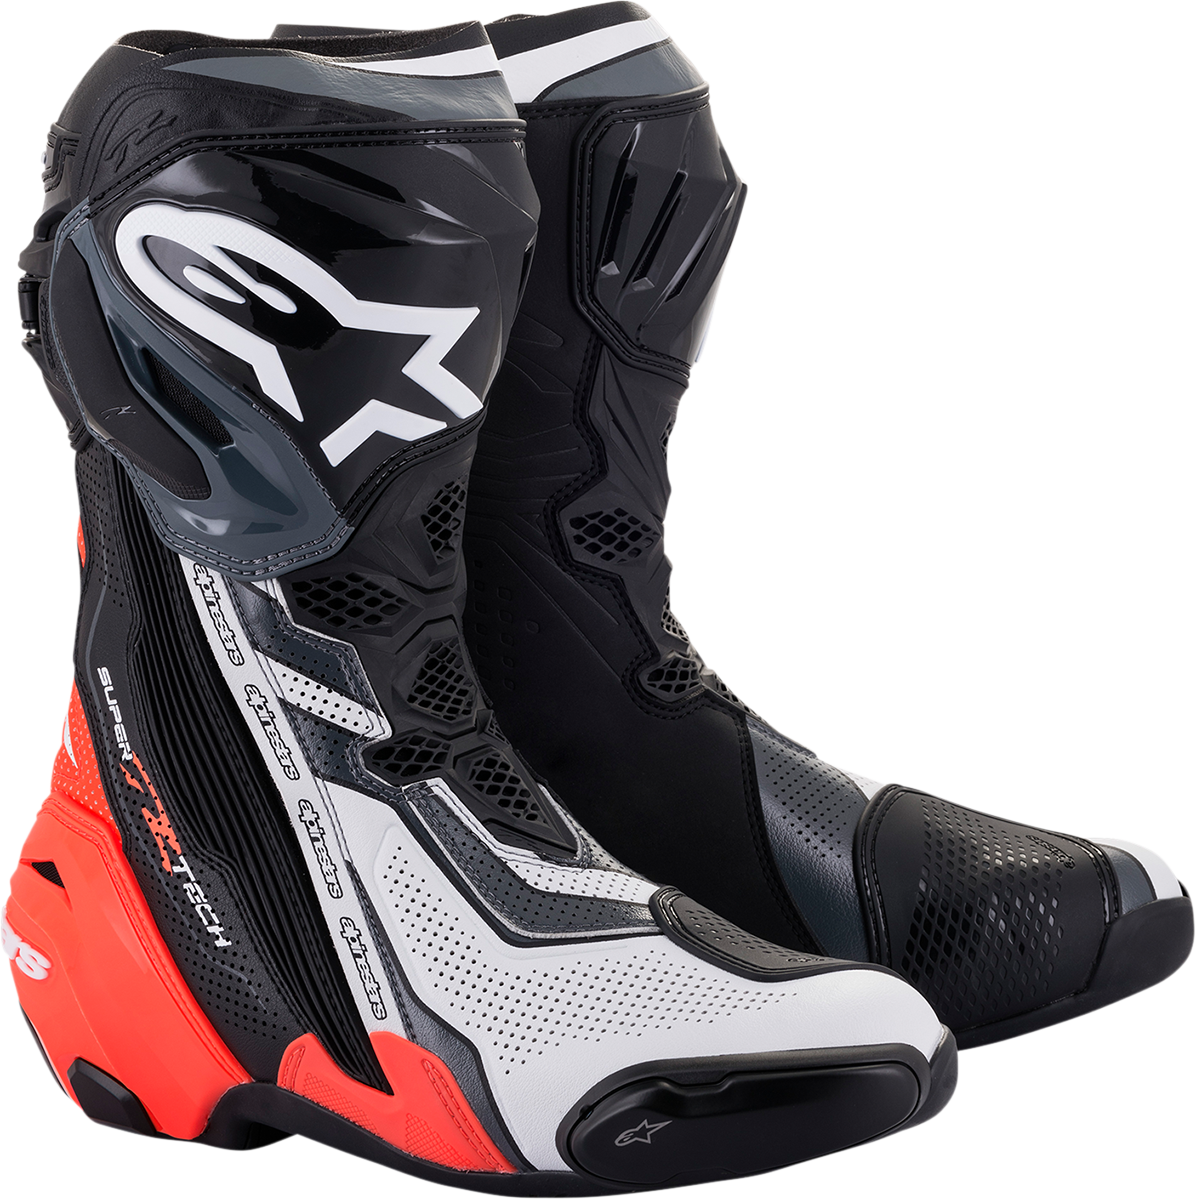 ALPINESTARS Supertech V Boots - Black/Red/White/Gray - US 10.5 / EU 45 2220121-1329-45